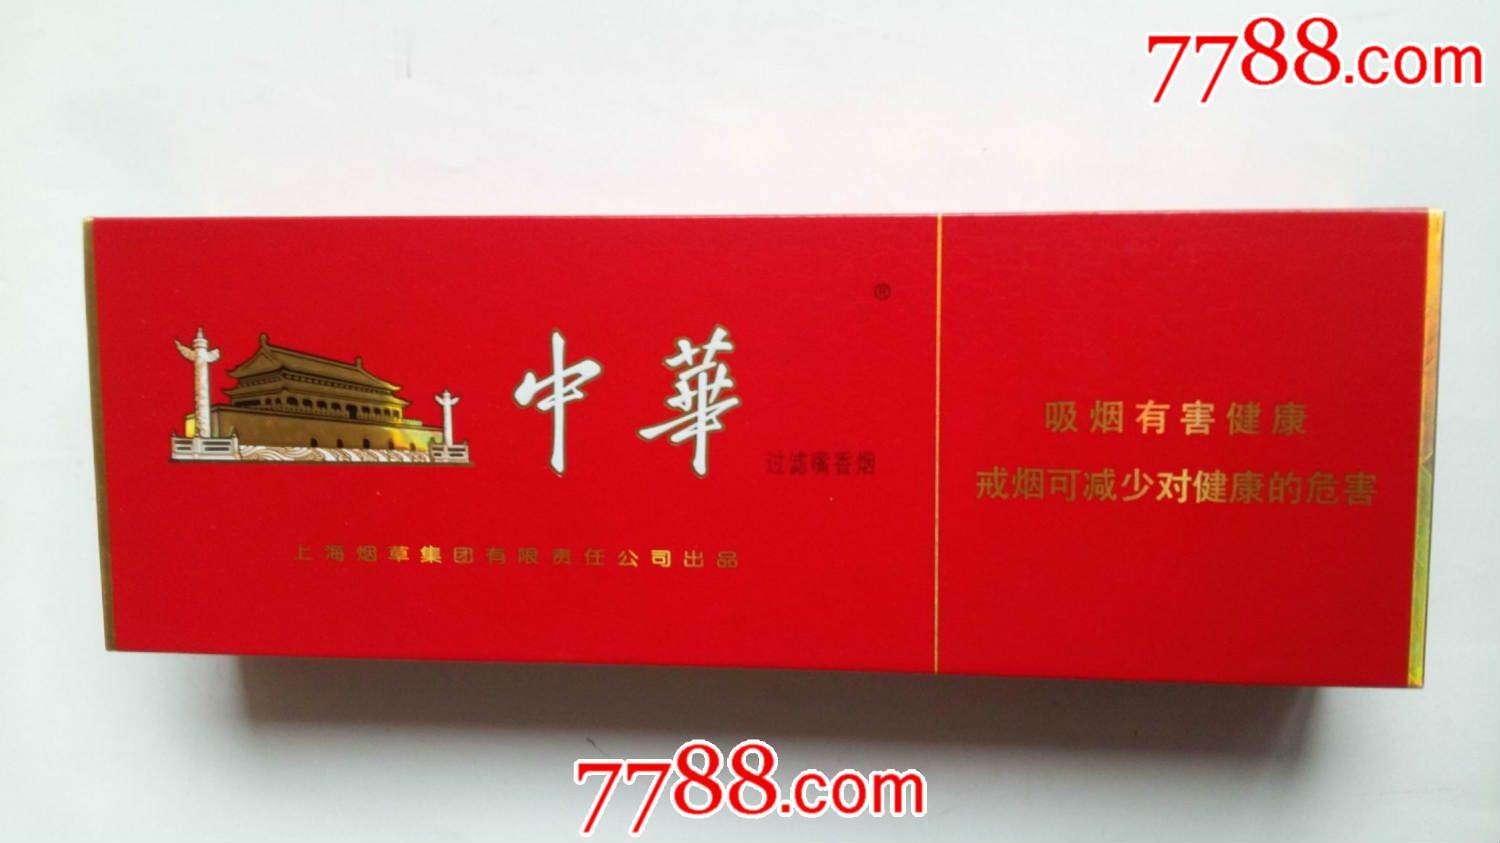 2,中华(软),俗称软中华,也全国市场可见的大中华香烟